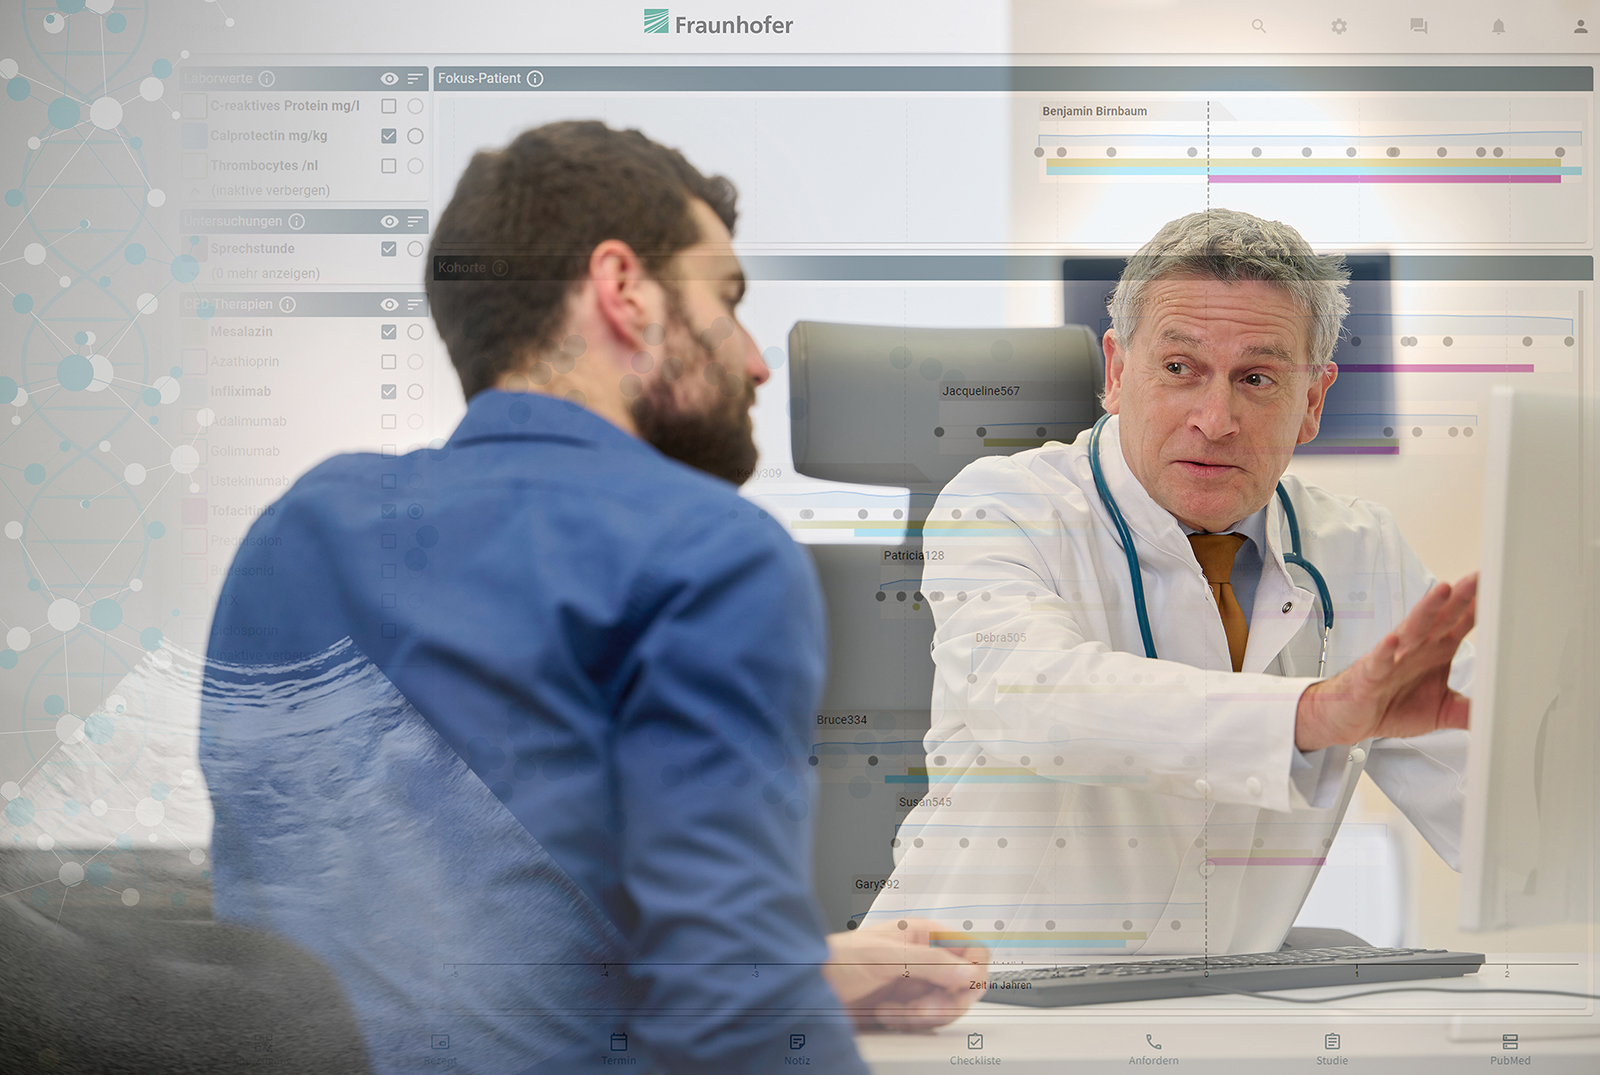 Mit einer personalisierten und kostenintelligenten Behandlung eröffnet das digitale Patientenmodell des Fraunhofer-Leitprojekts MED²ICIN neue Möglichkeiten für die Gesundheitswirtschaft.